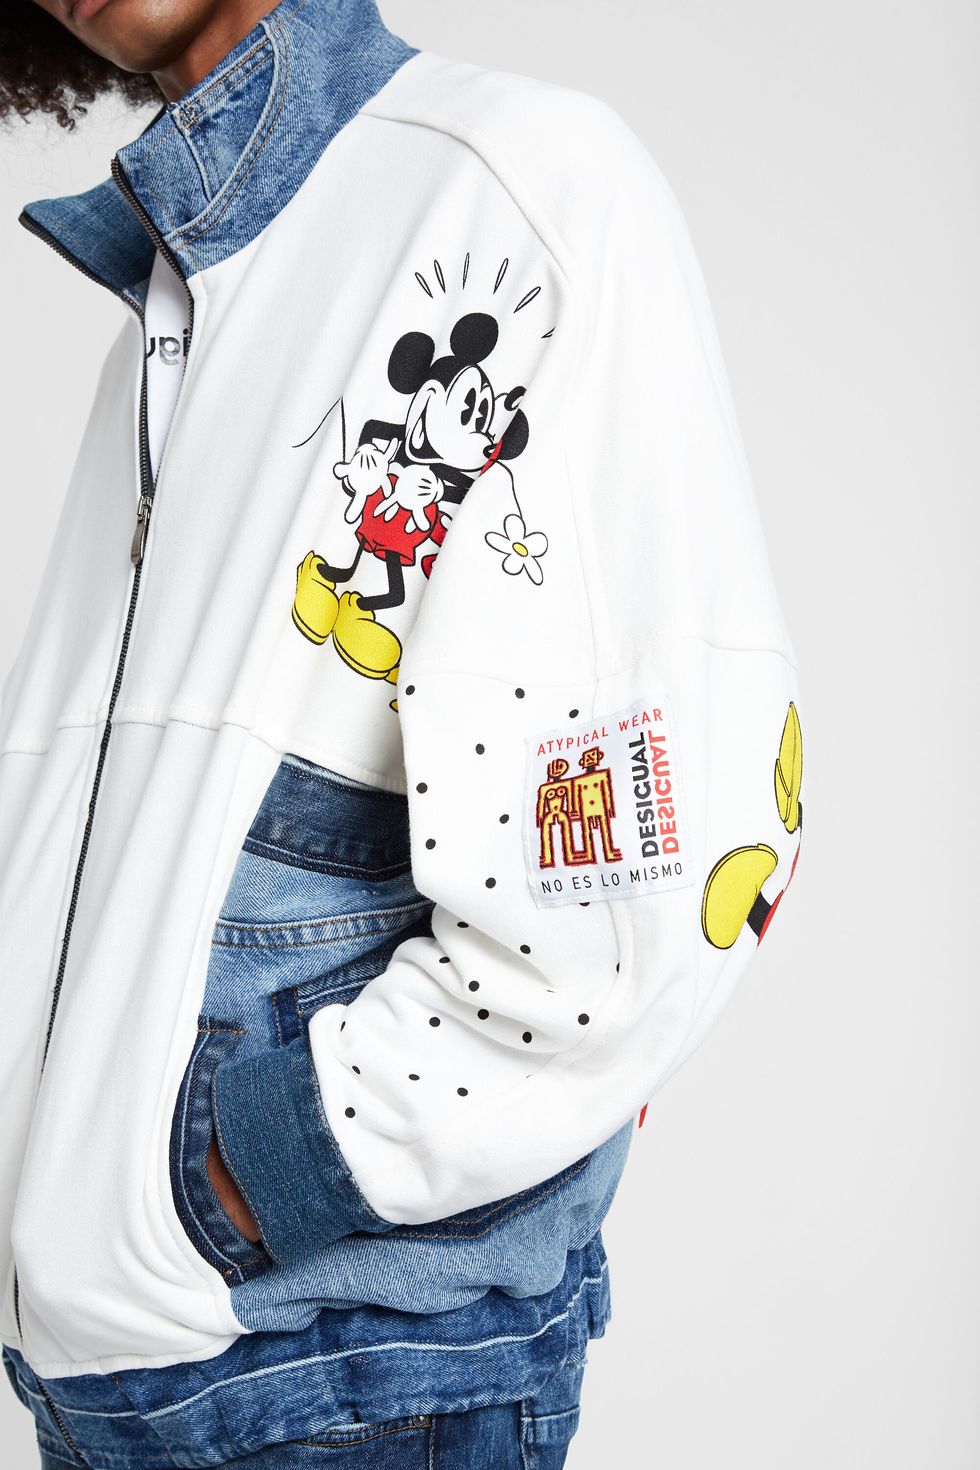 Quando si festeggia il Capodanno Cinese 2020, ovvero year of the rat, è il 25 gennaio e la moda con Mickey Mouse e Minnie lo fa con Gucci, adidas e Uniqlo.